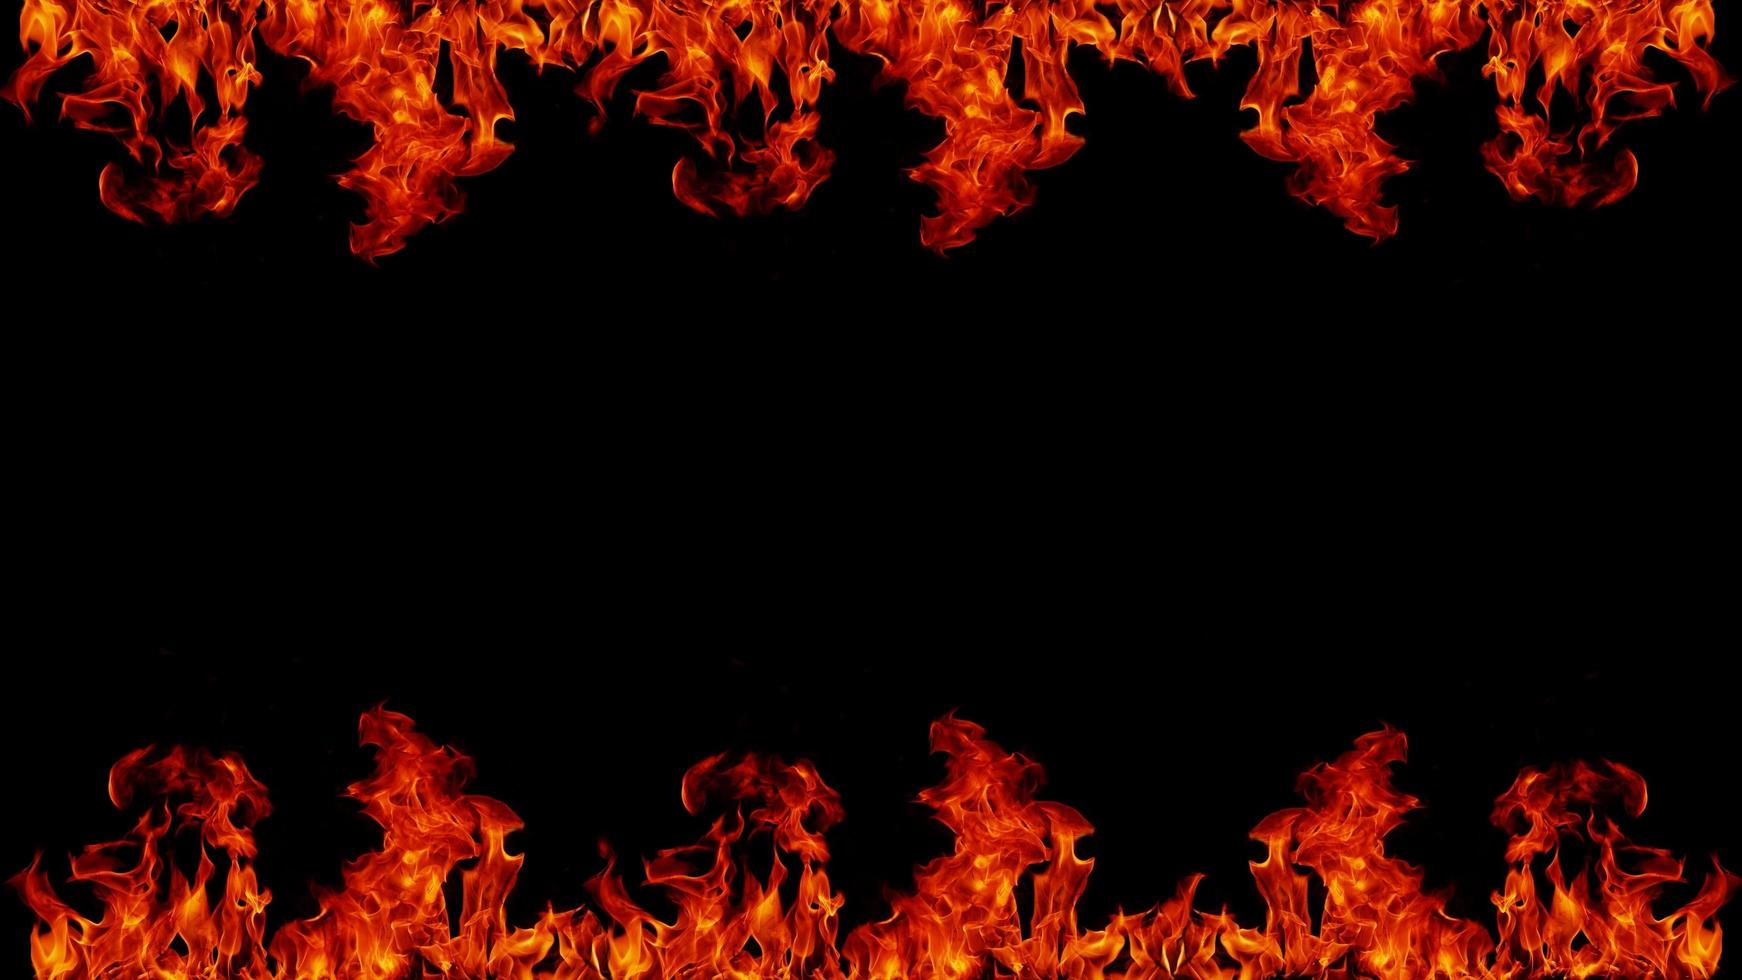 peligroso infierno caliente llamas de fuego marco de fotos cuadrados de fuego abstracto sobre fondo negro para el diseño.